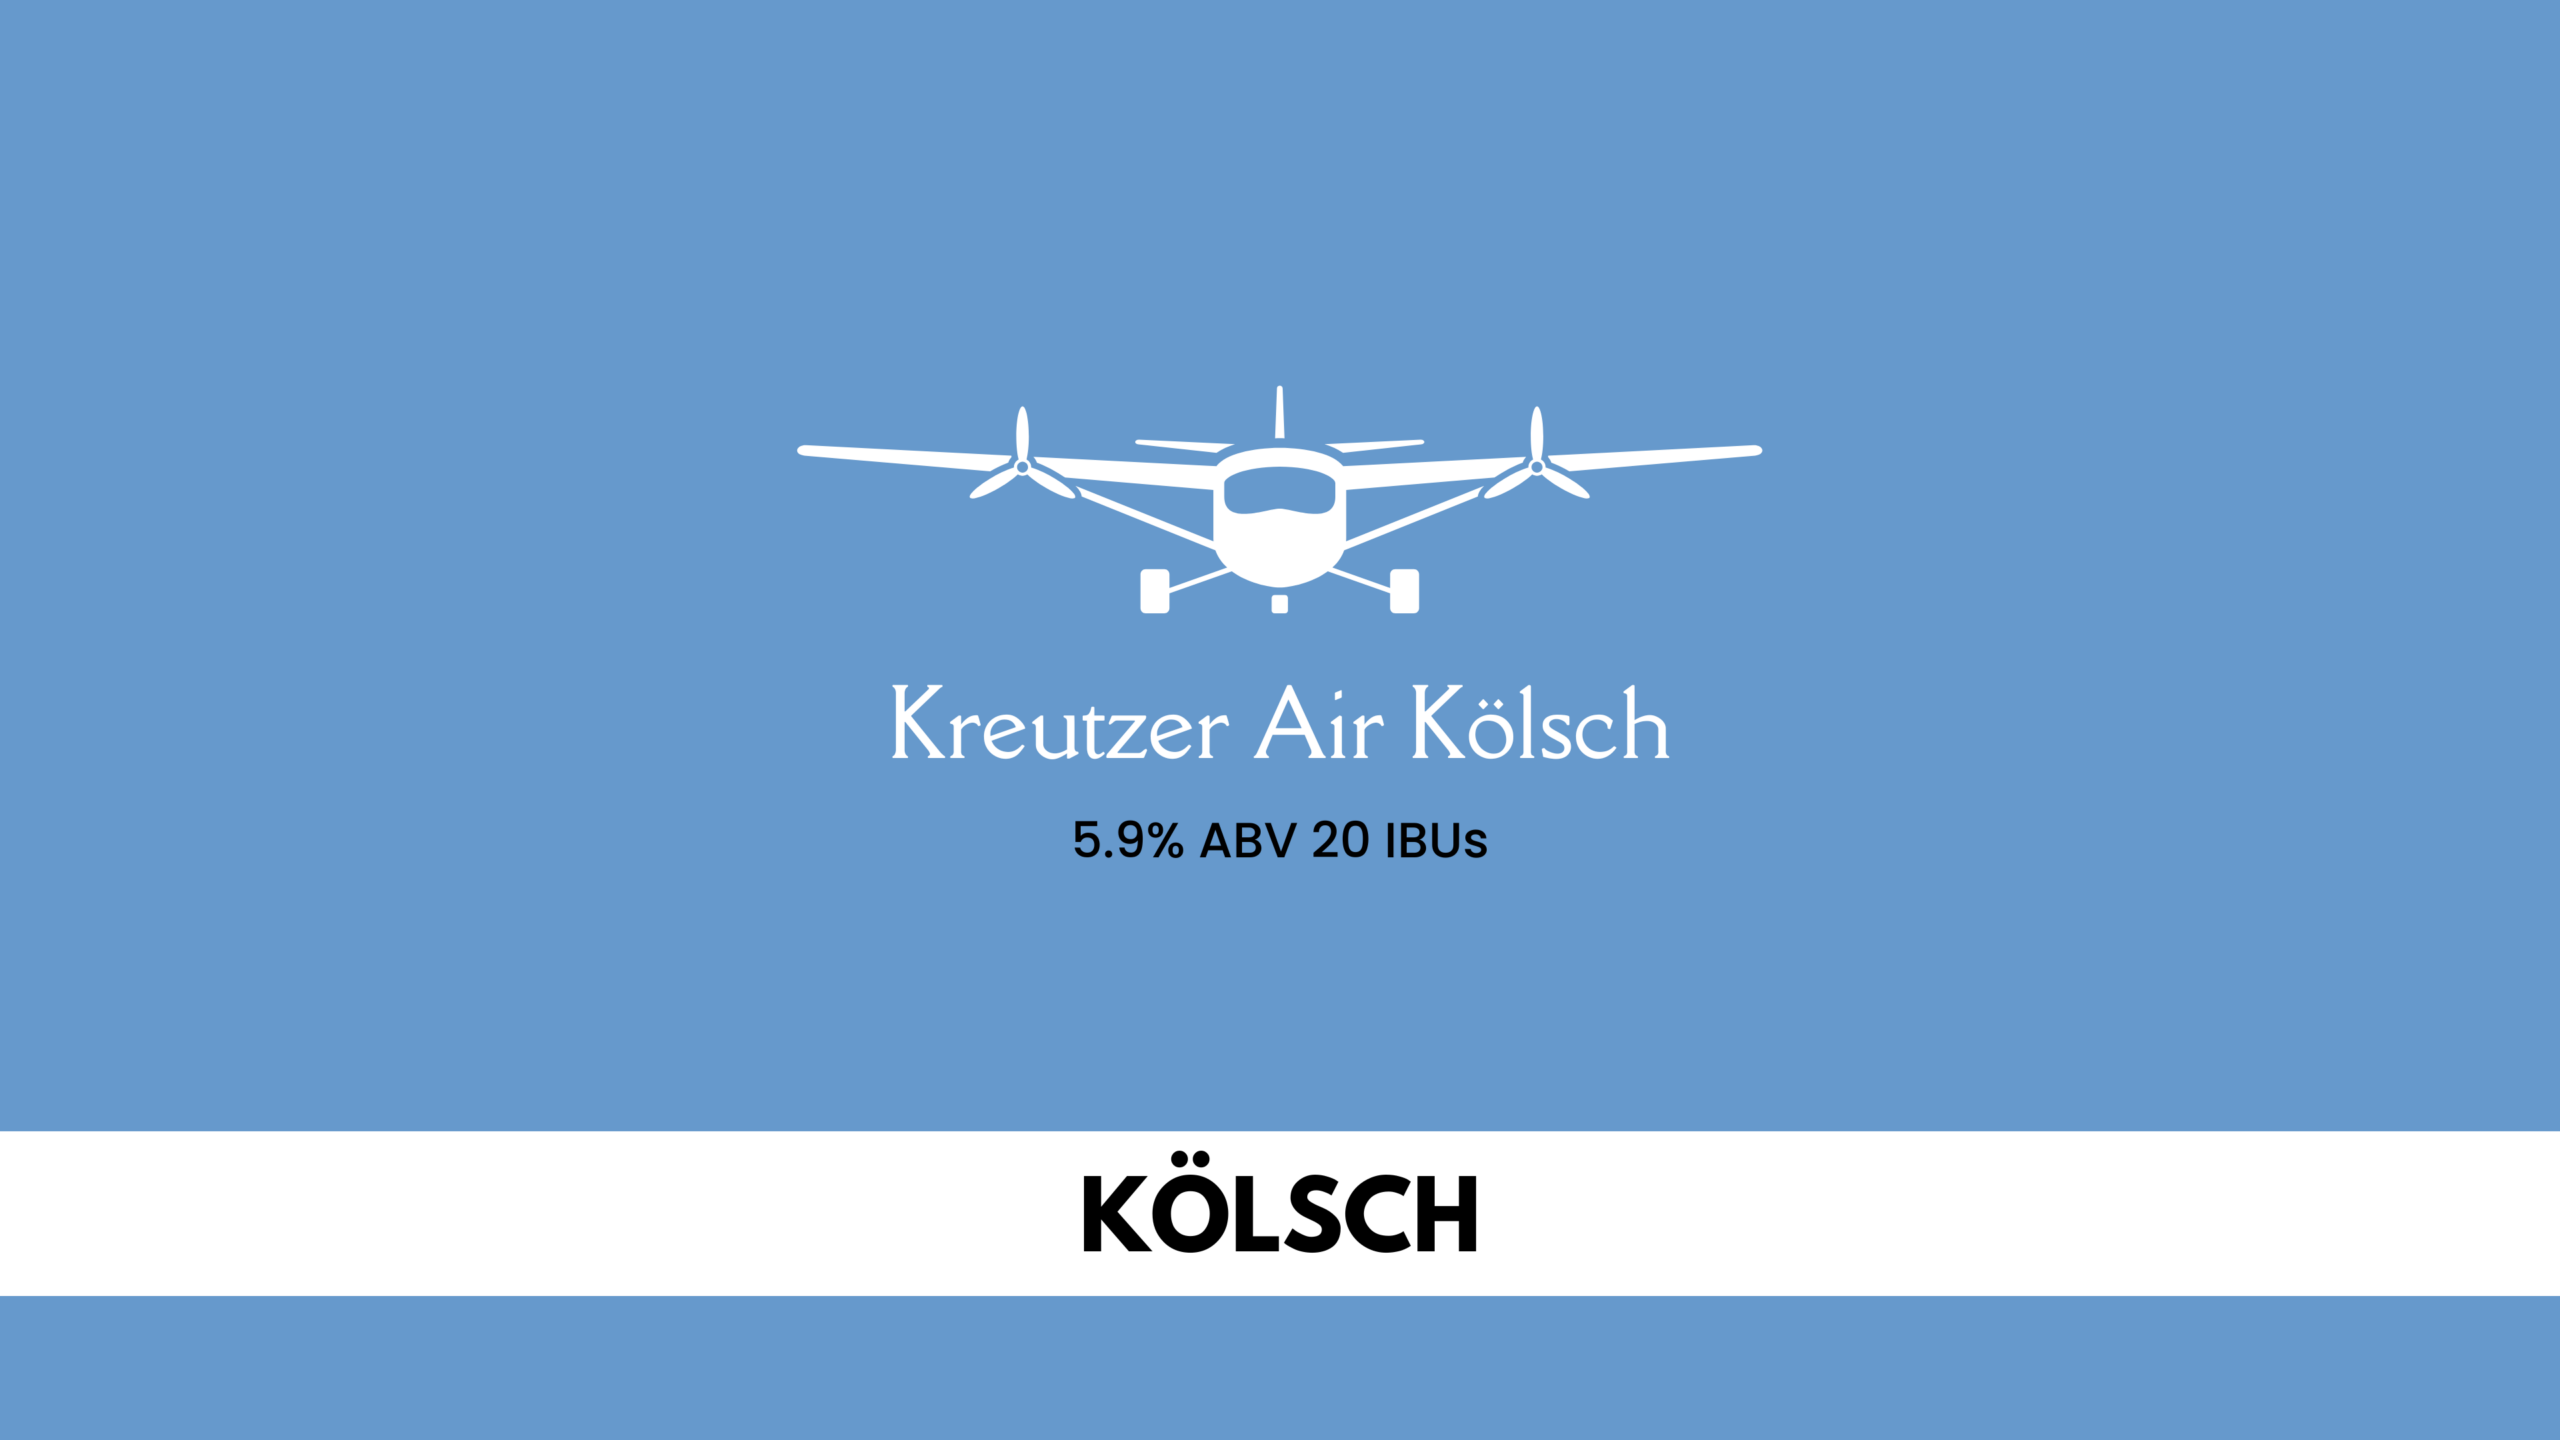 Kreutzer Air Kölsch Release at On Rotation